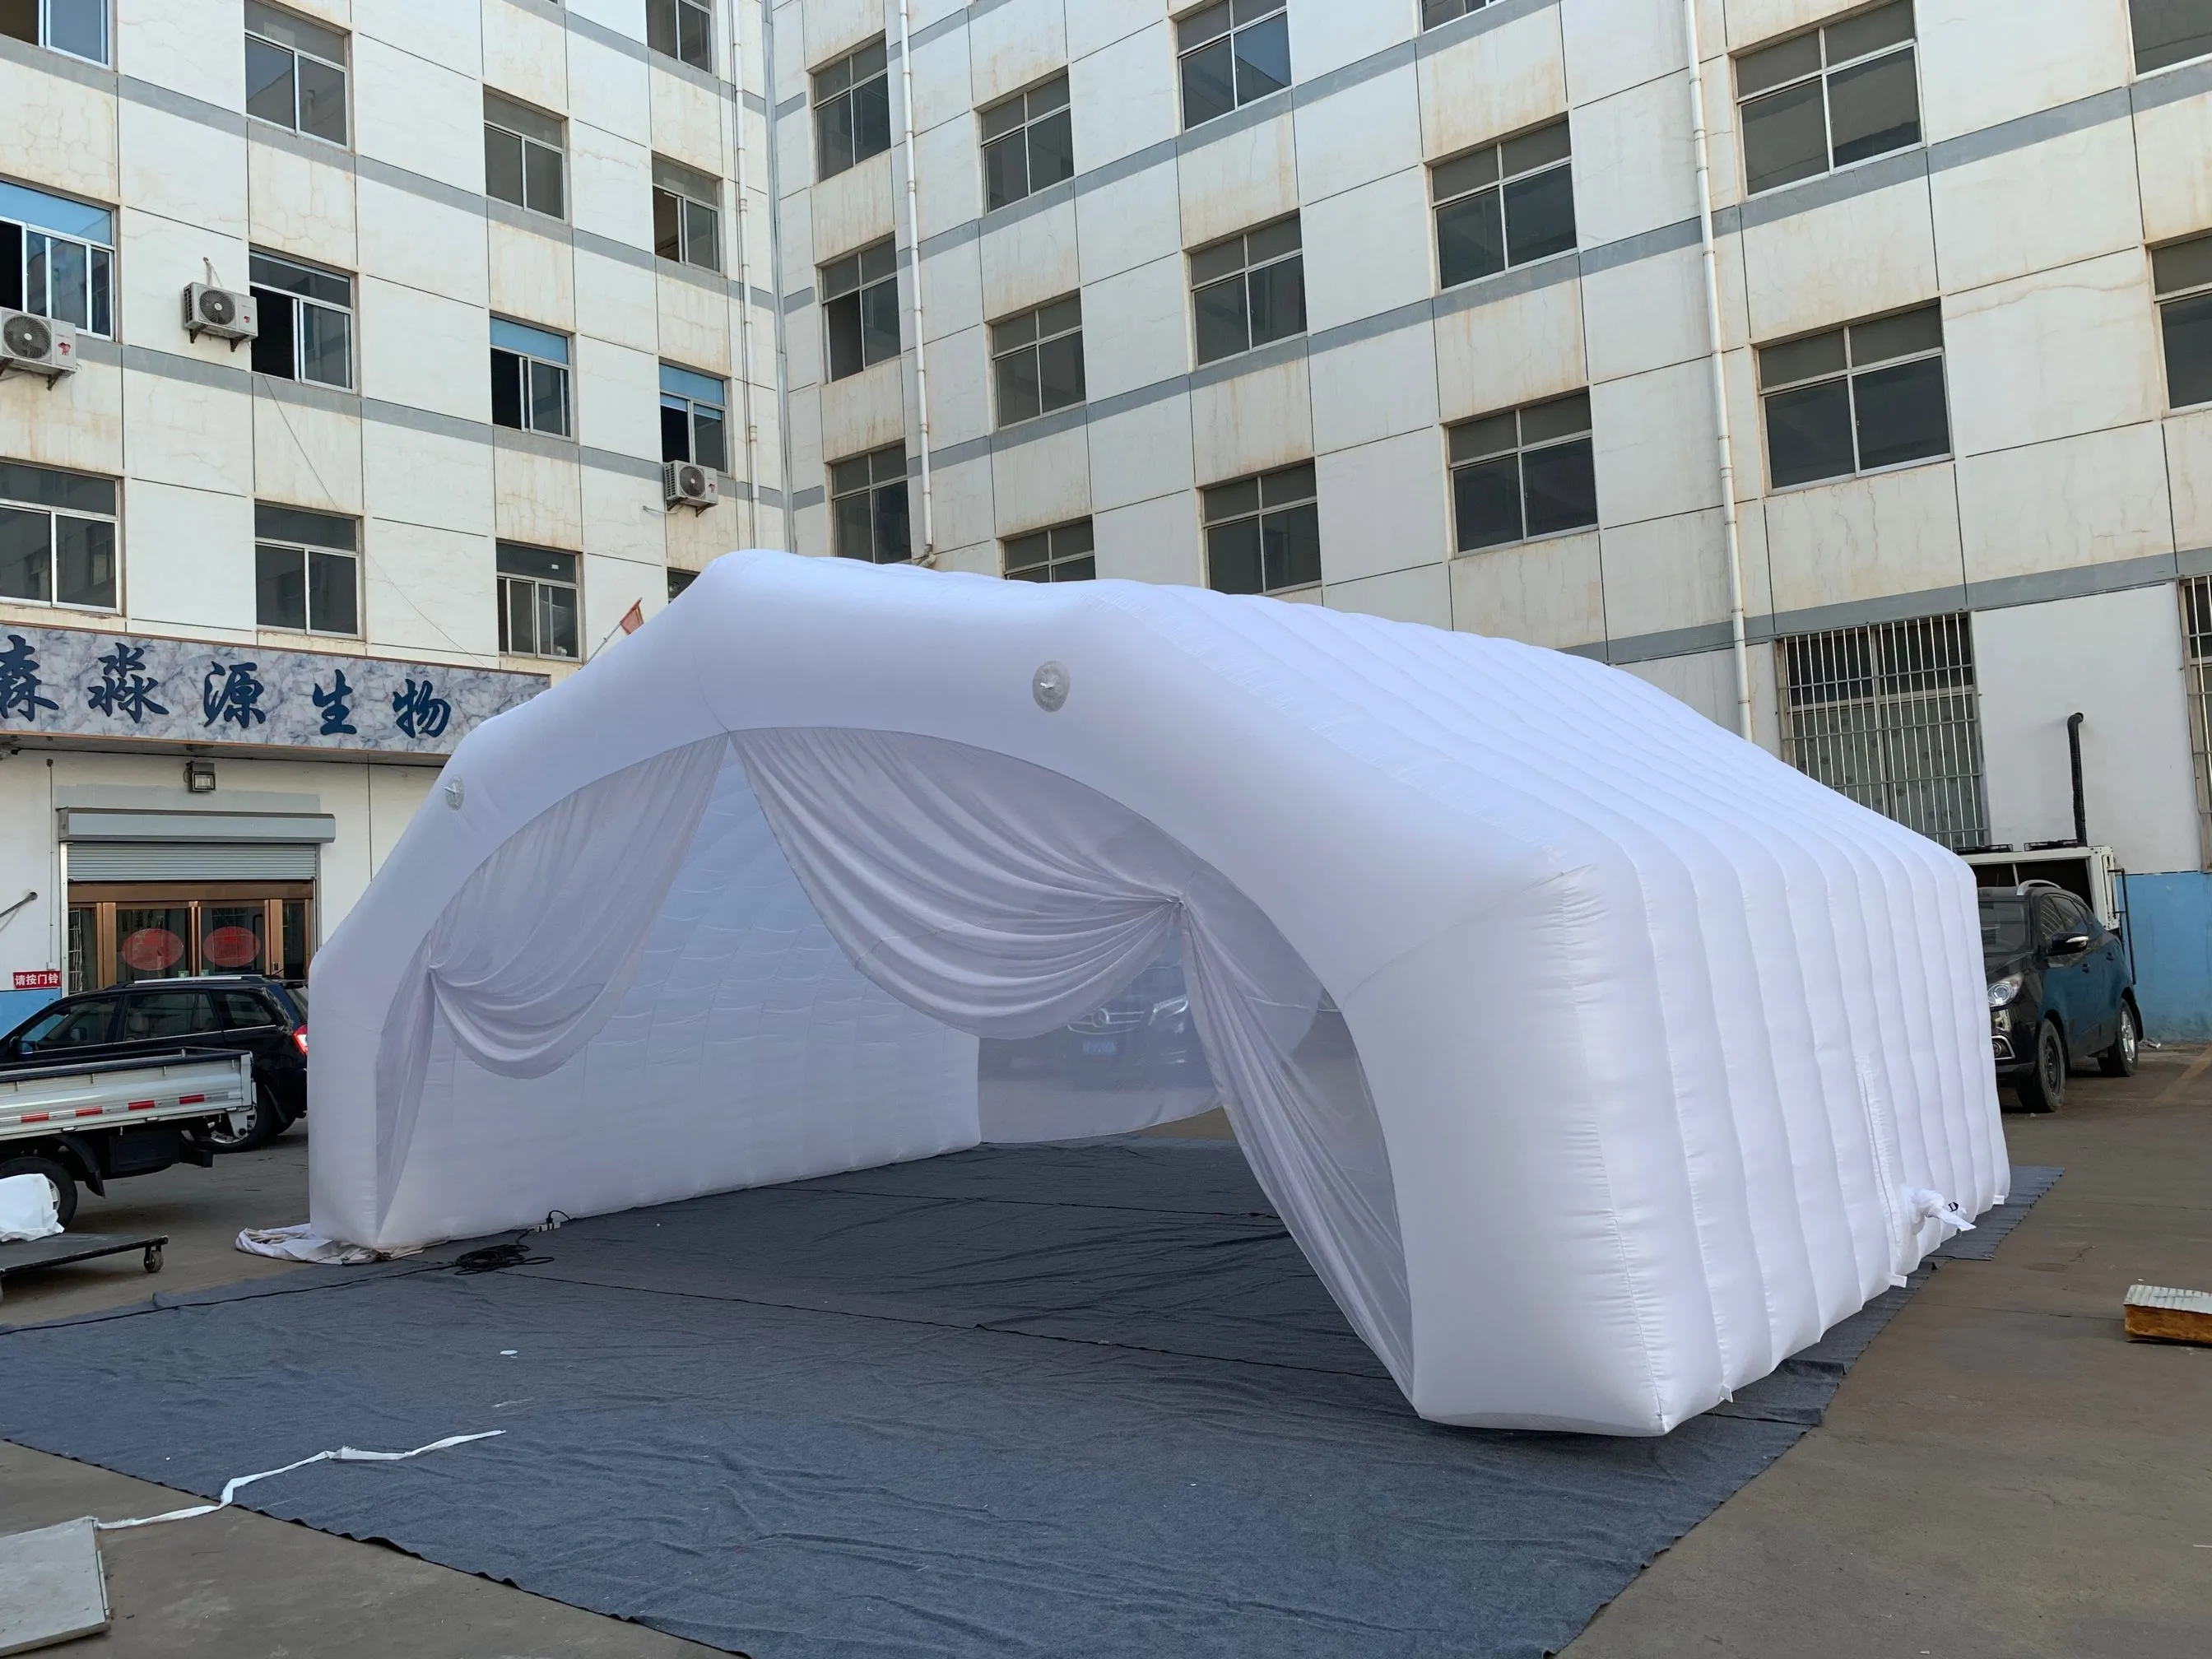 8x5x3.5mH (26x16.5x11.5ft) cadre de tente publicitaire gonflable extérieur tunnel de tente blanc avec rideau pour la publicité et l'exposition